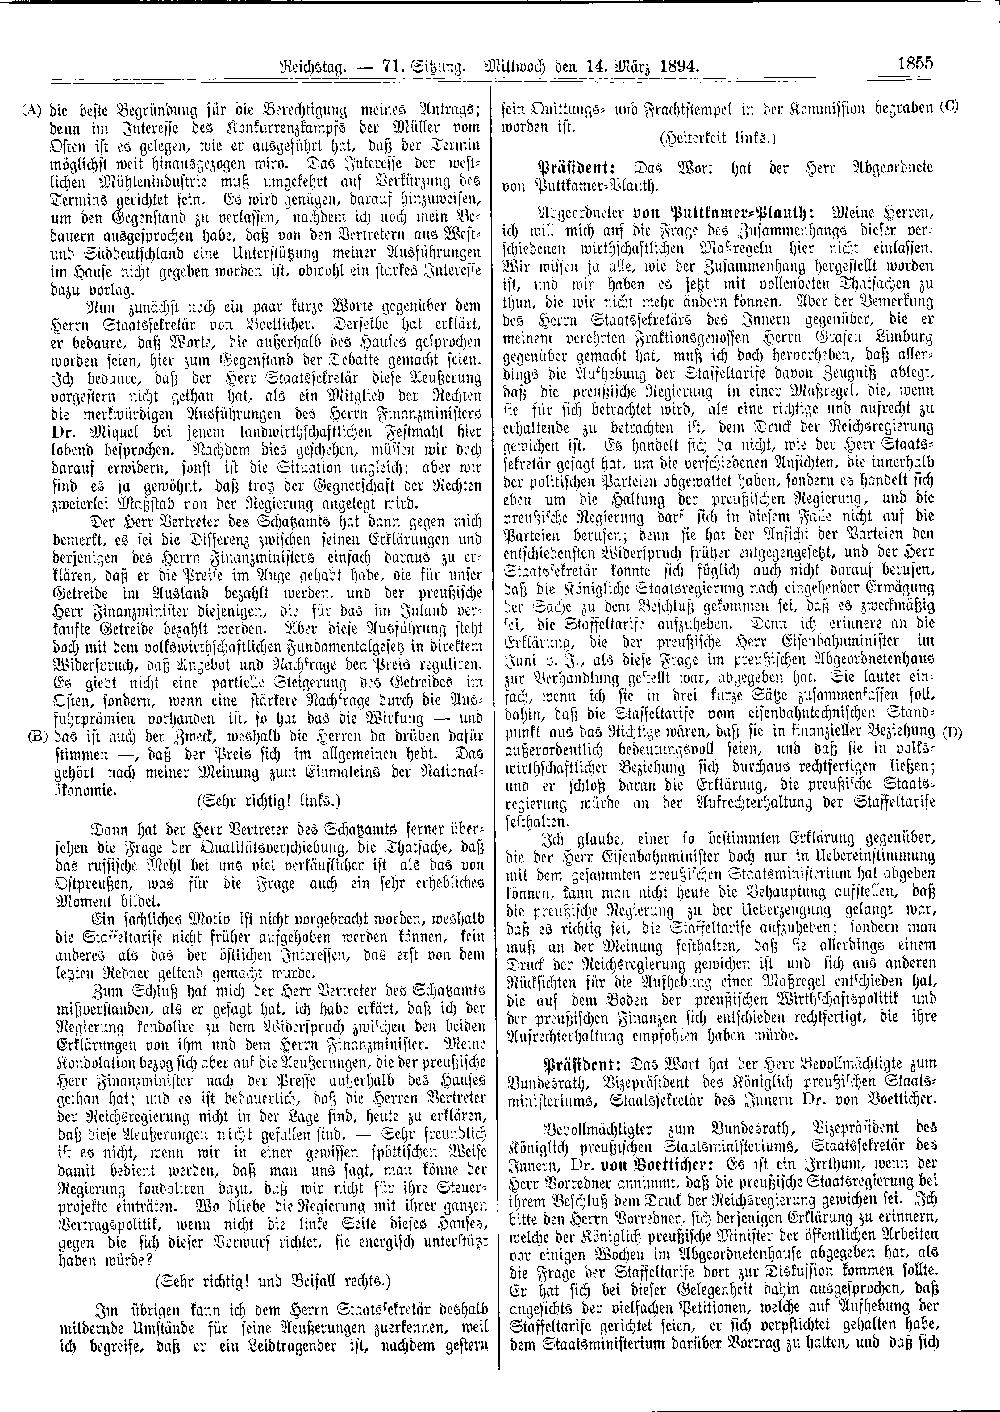 Scan der Seite 1855